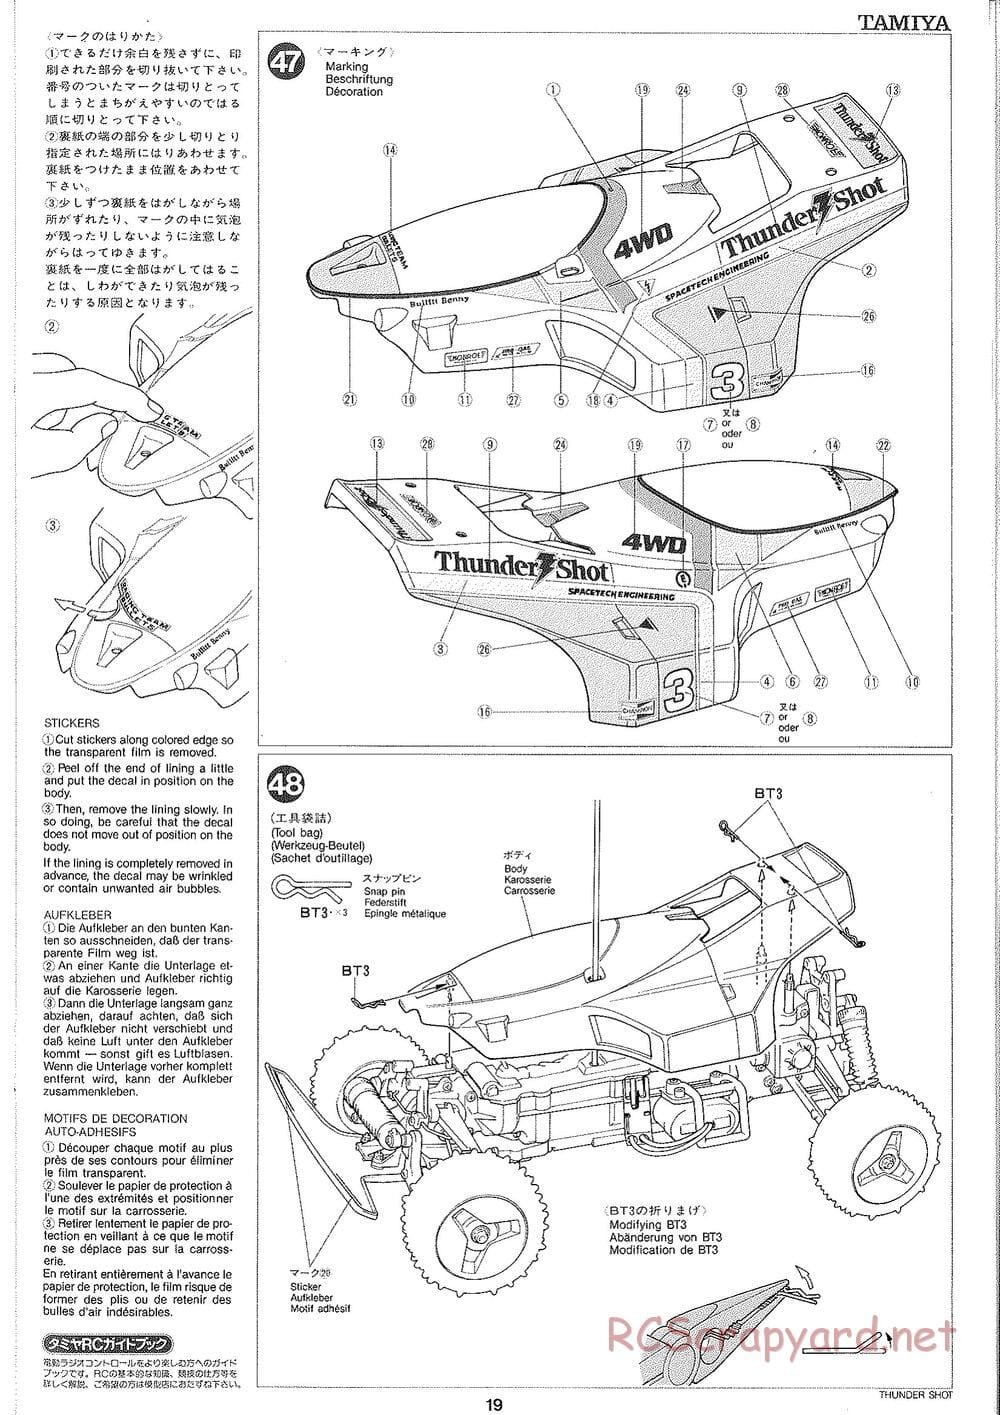 Tamiya - Thunder Shot - TS1 Chassis - Manual - Page 20